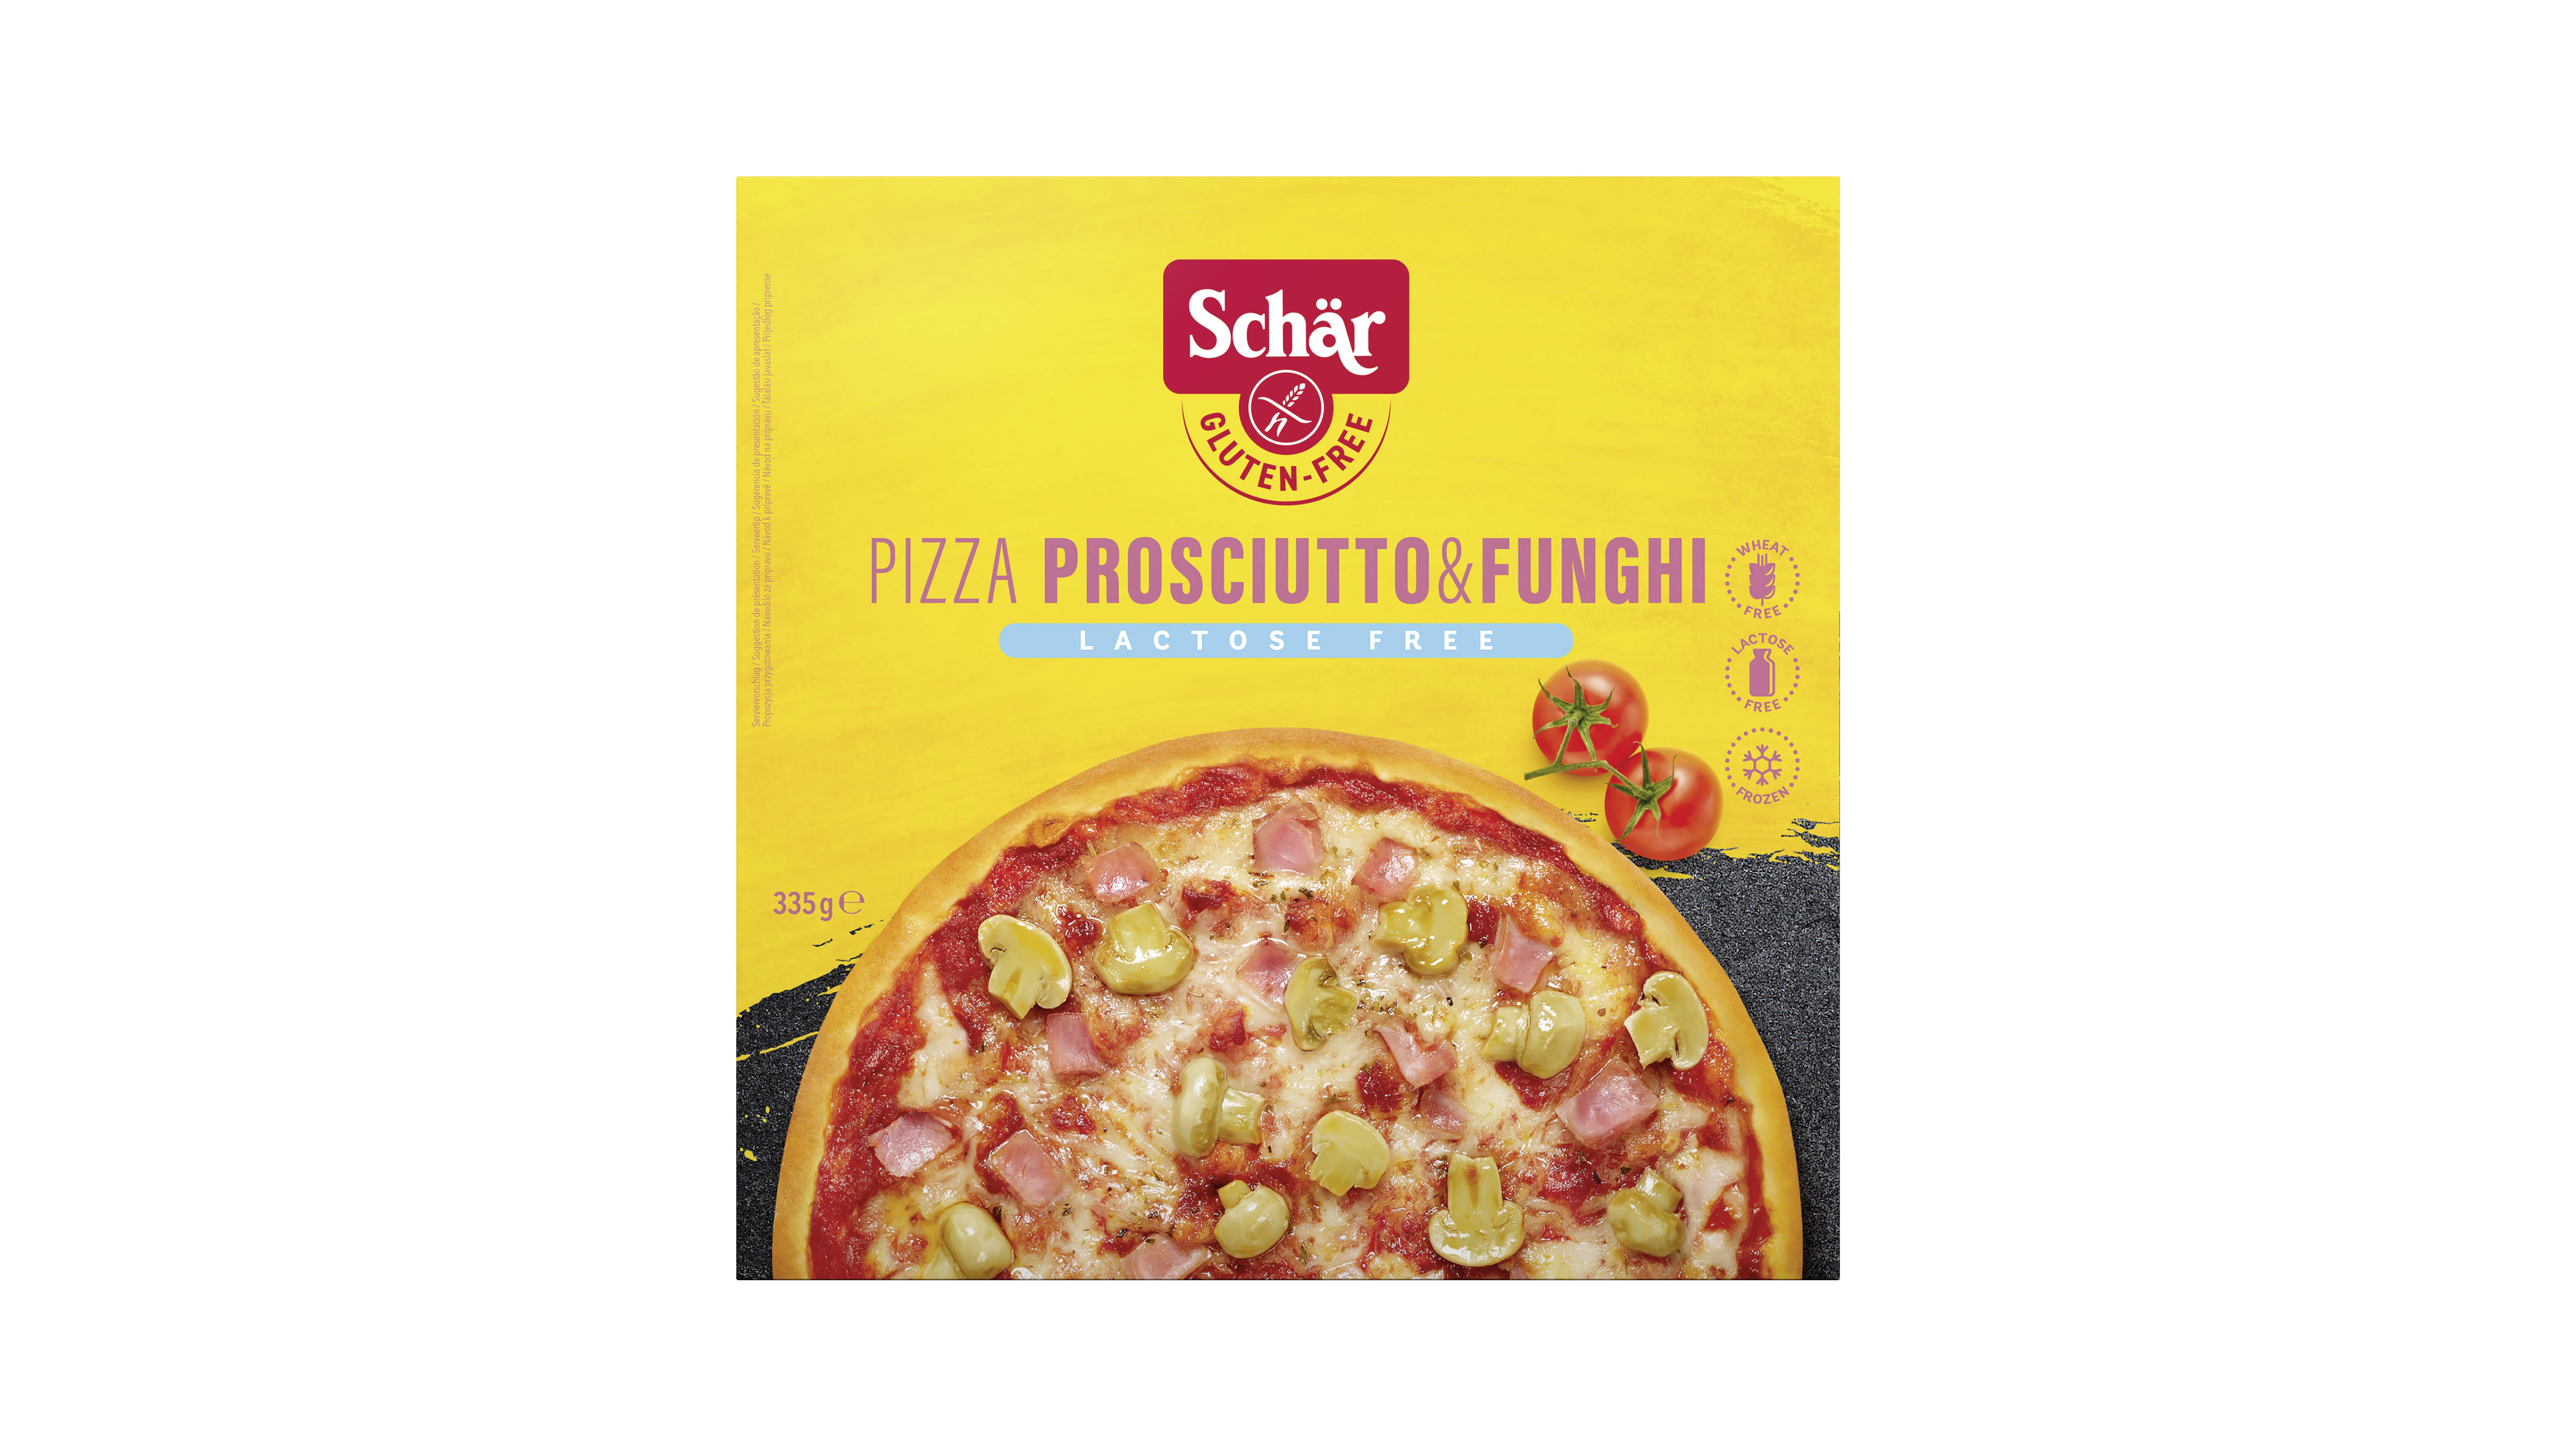 Schär Pizza proscuitto & funghi sans gluten 335g